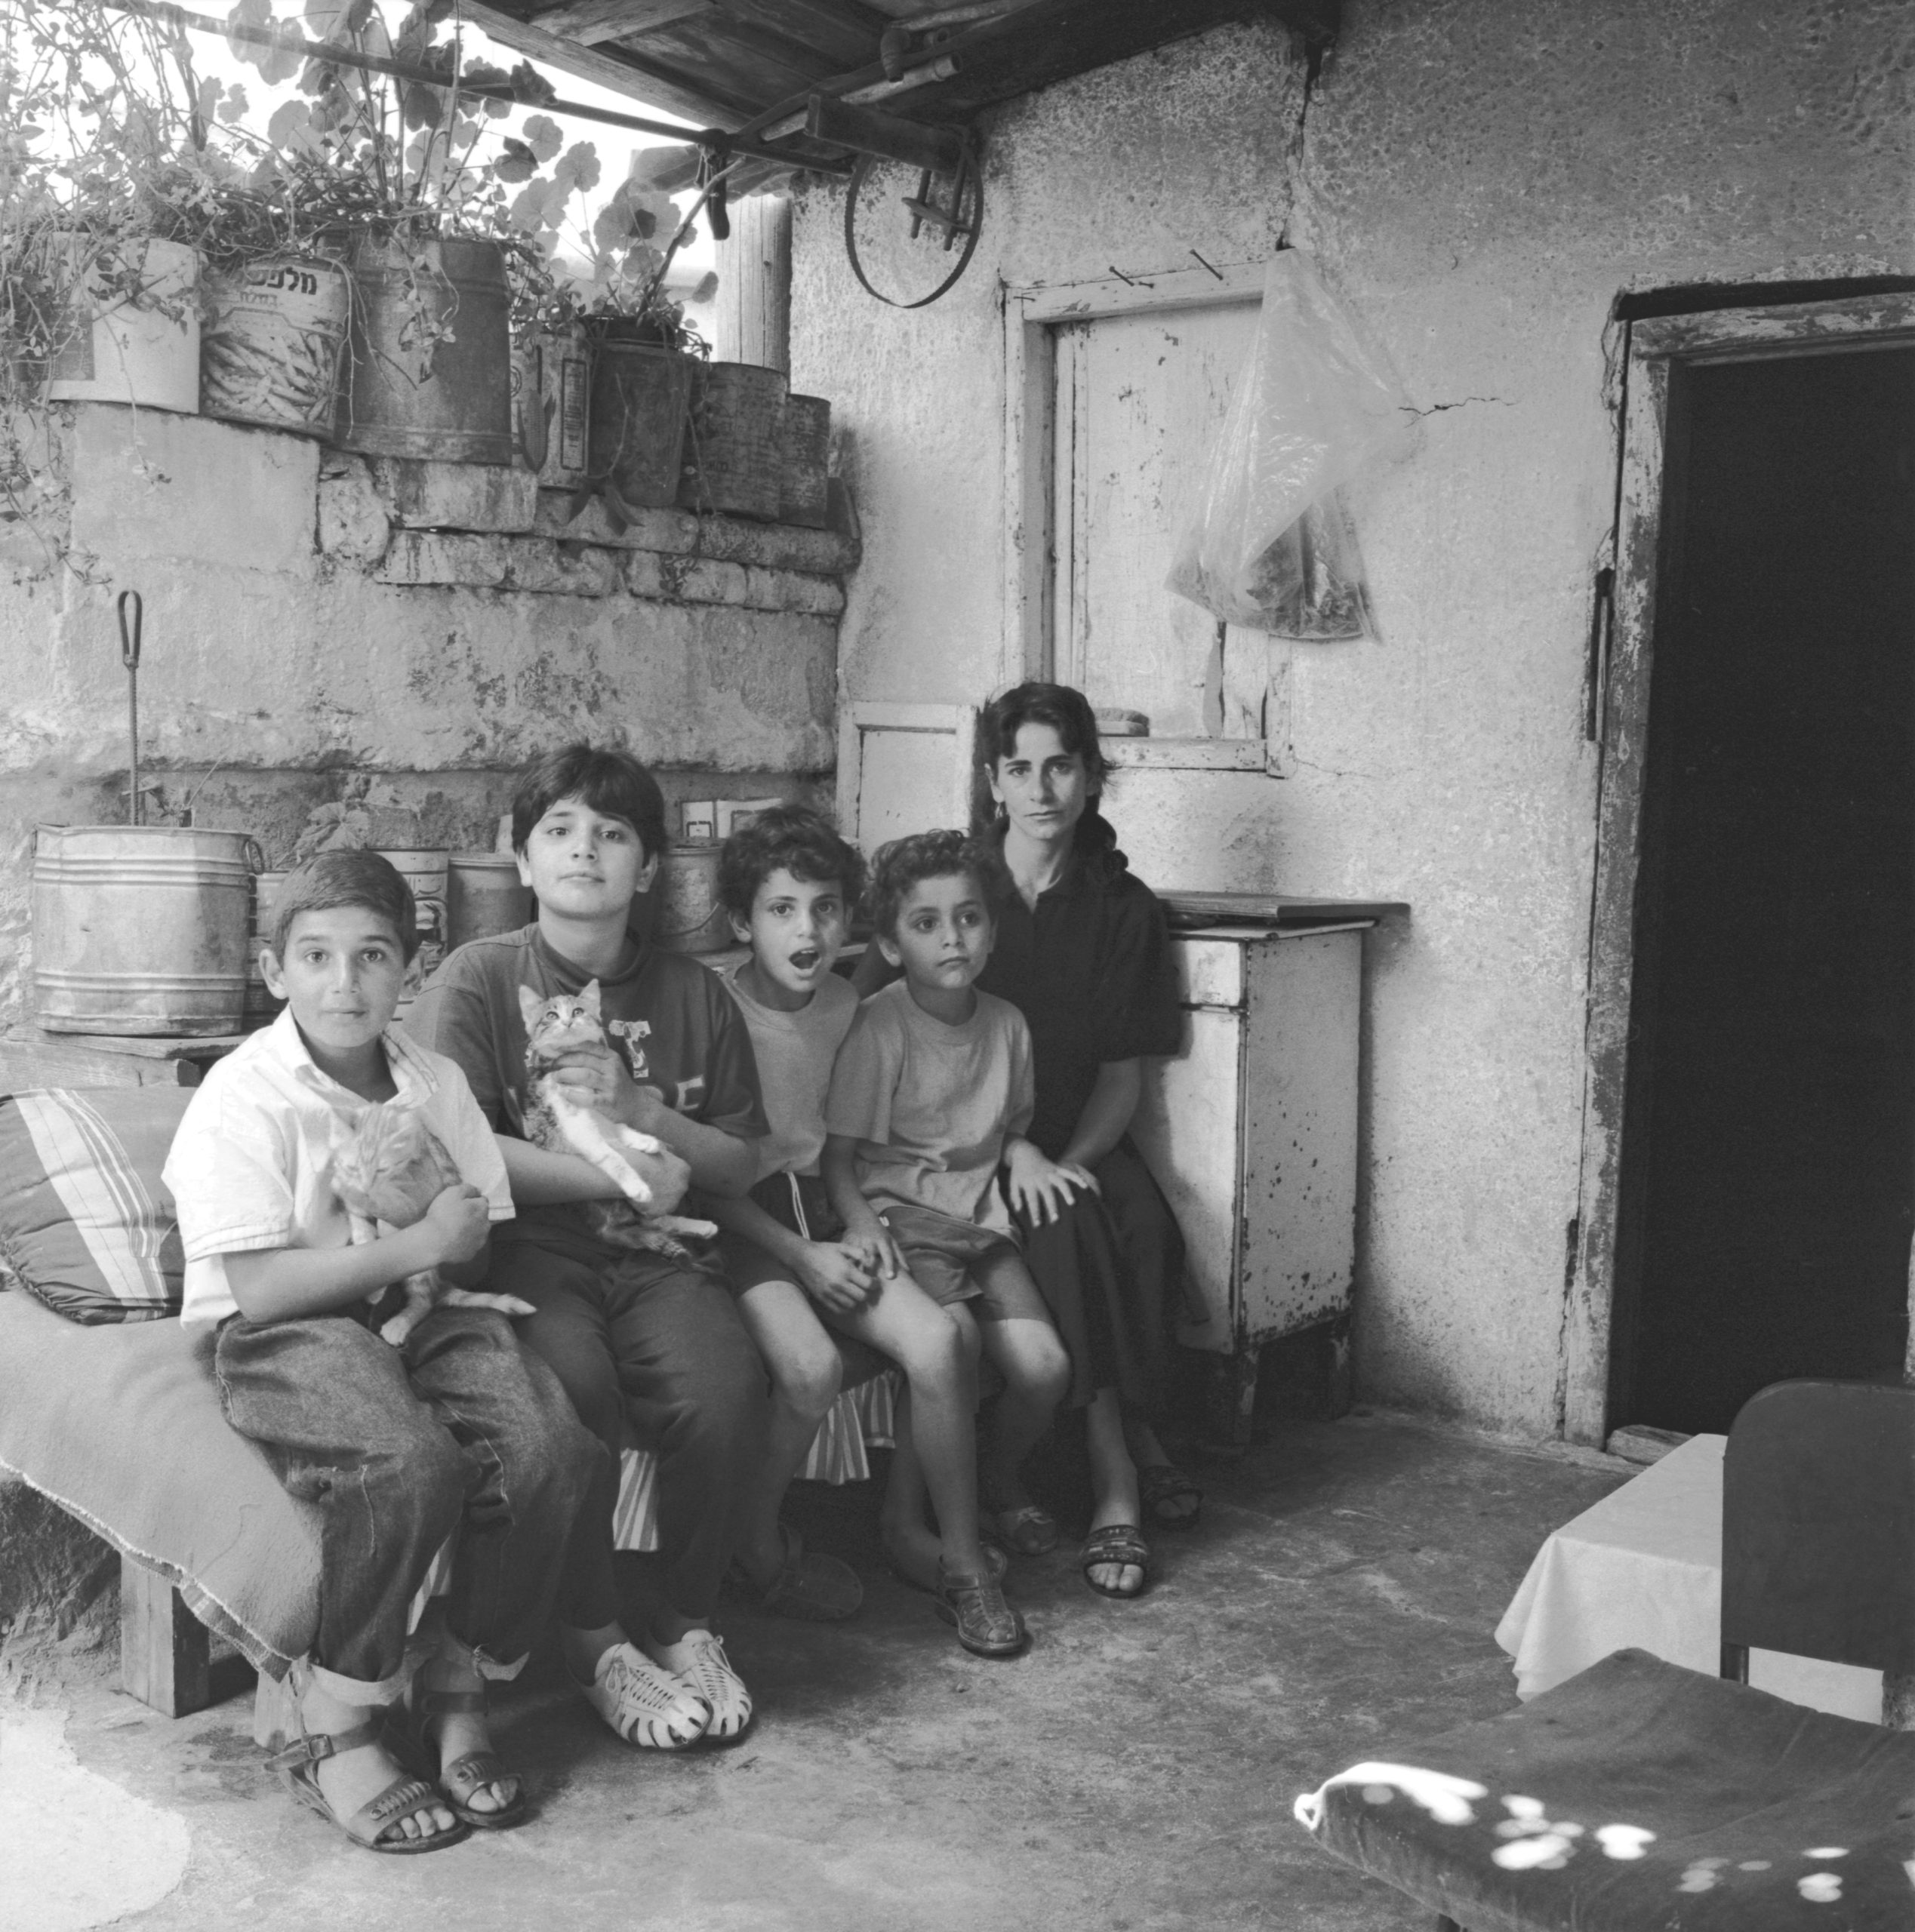 Jean-Louis Schoellkopf, Portrait de famille palestinienne, 1993 © Jean-Louis Schoellkopf